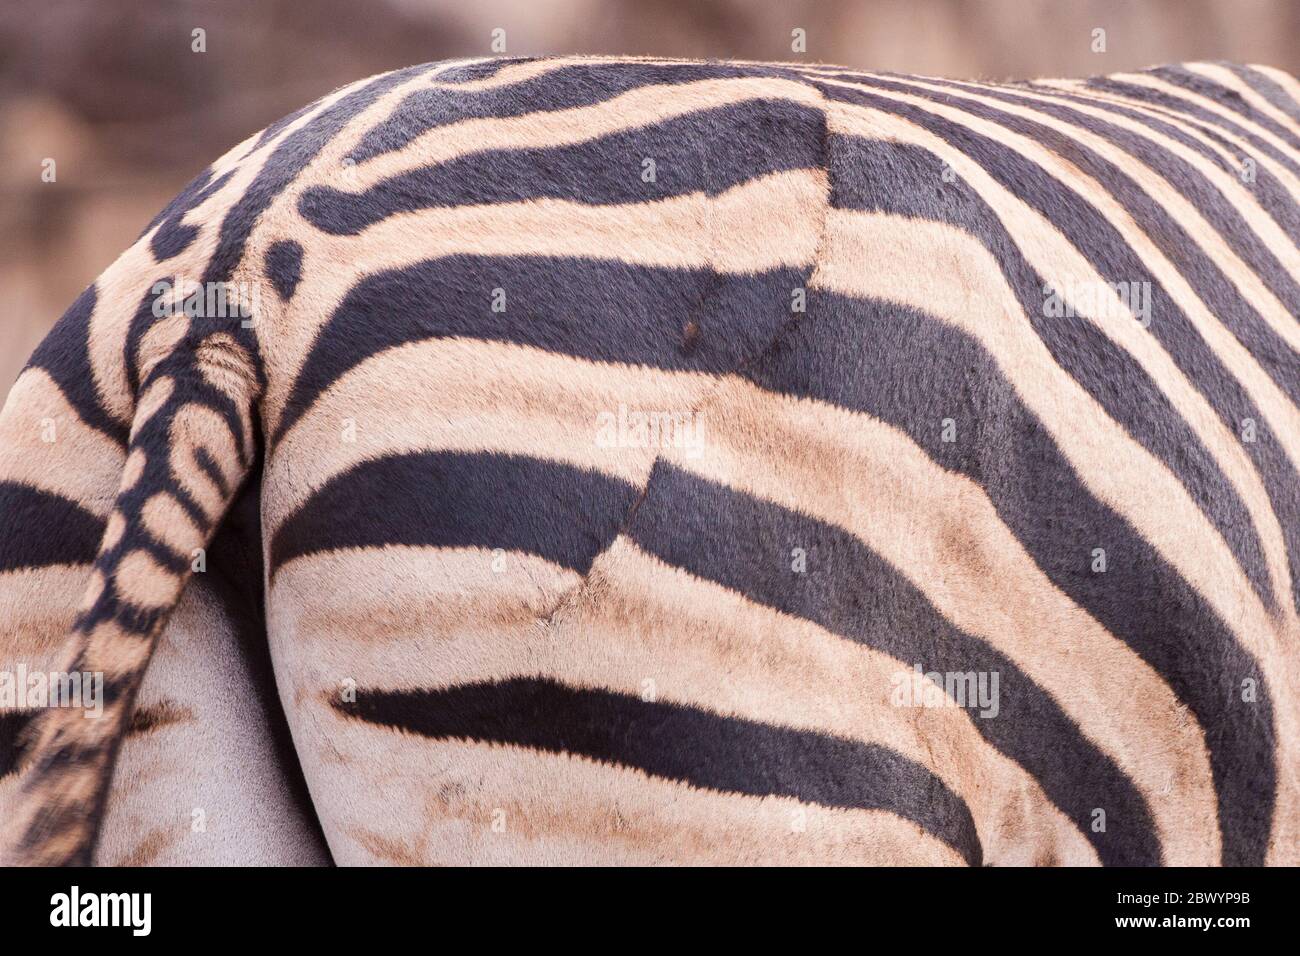 Heilte Wunde von einem Löwenangriff auf einen Zebra Kruger Park Südafrika Stockfoto